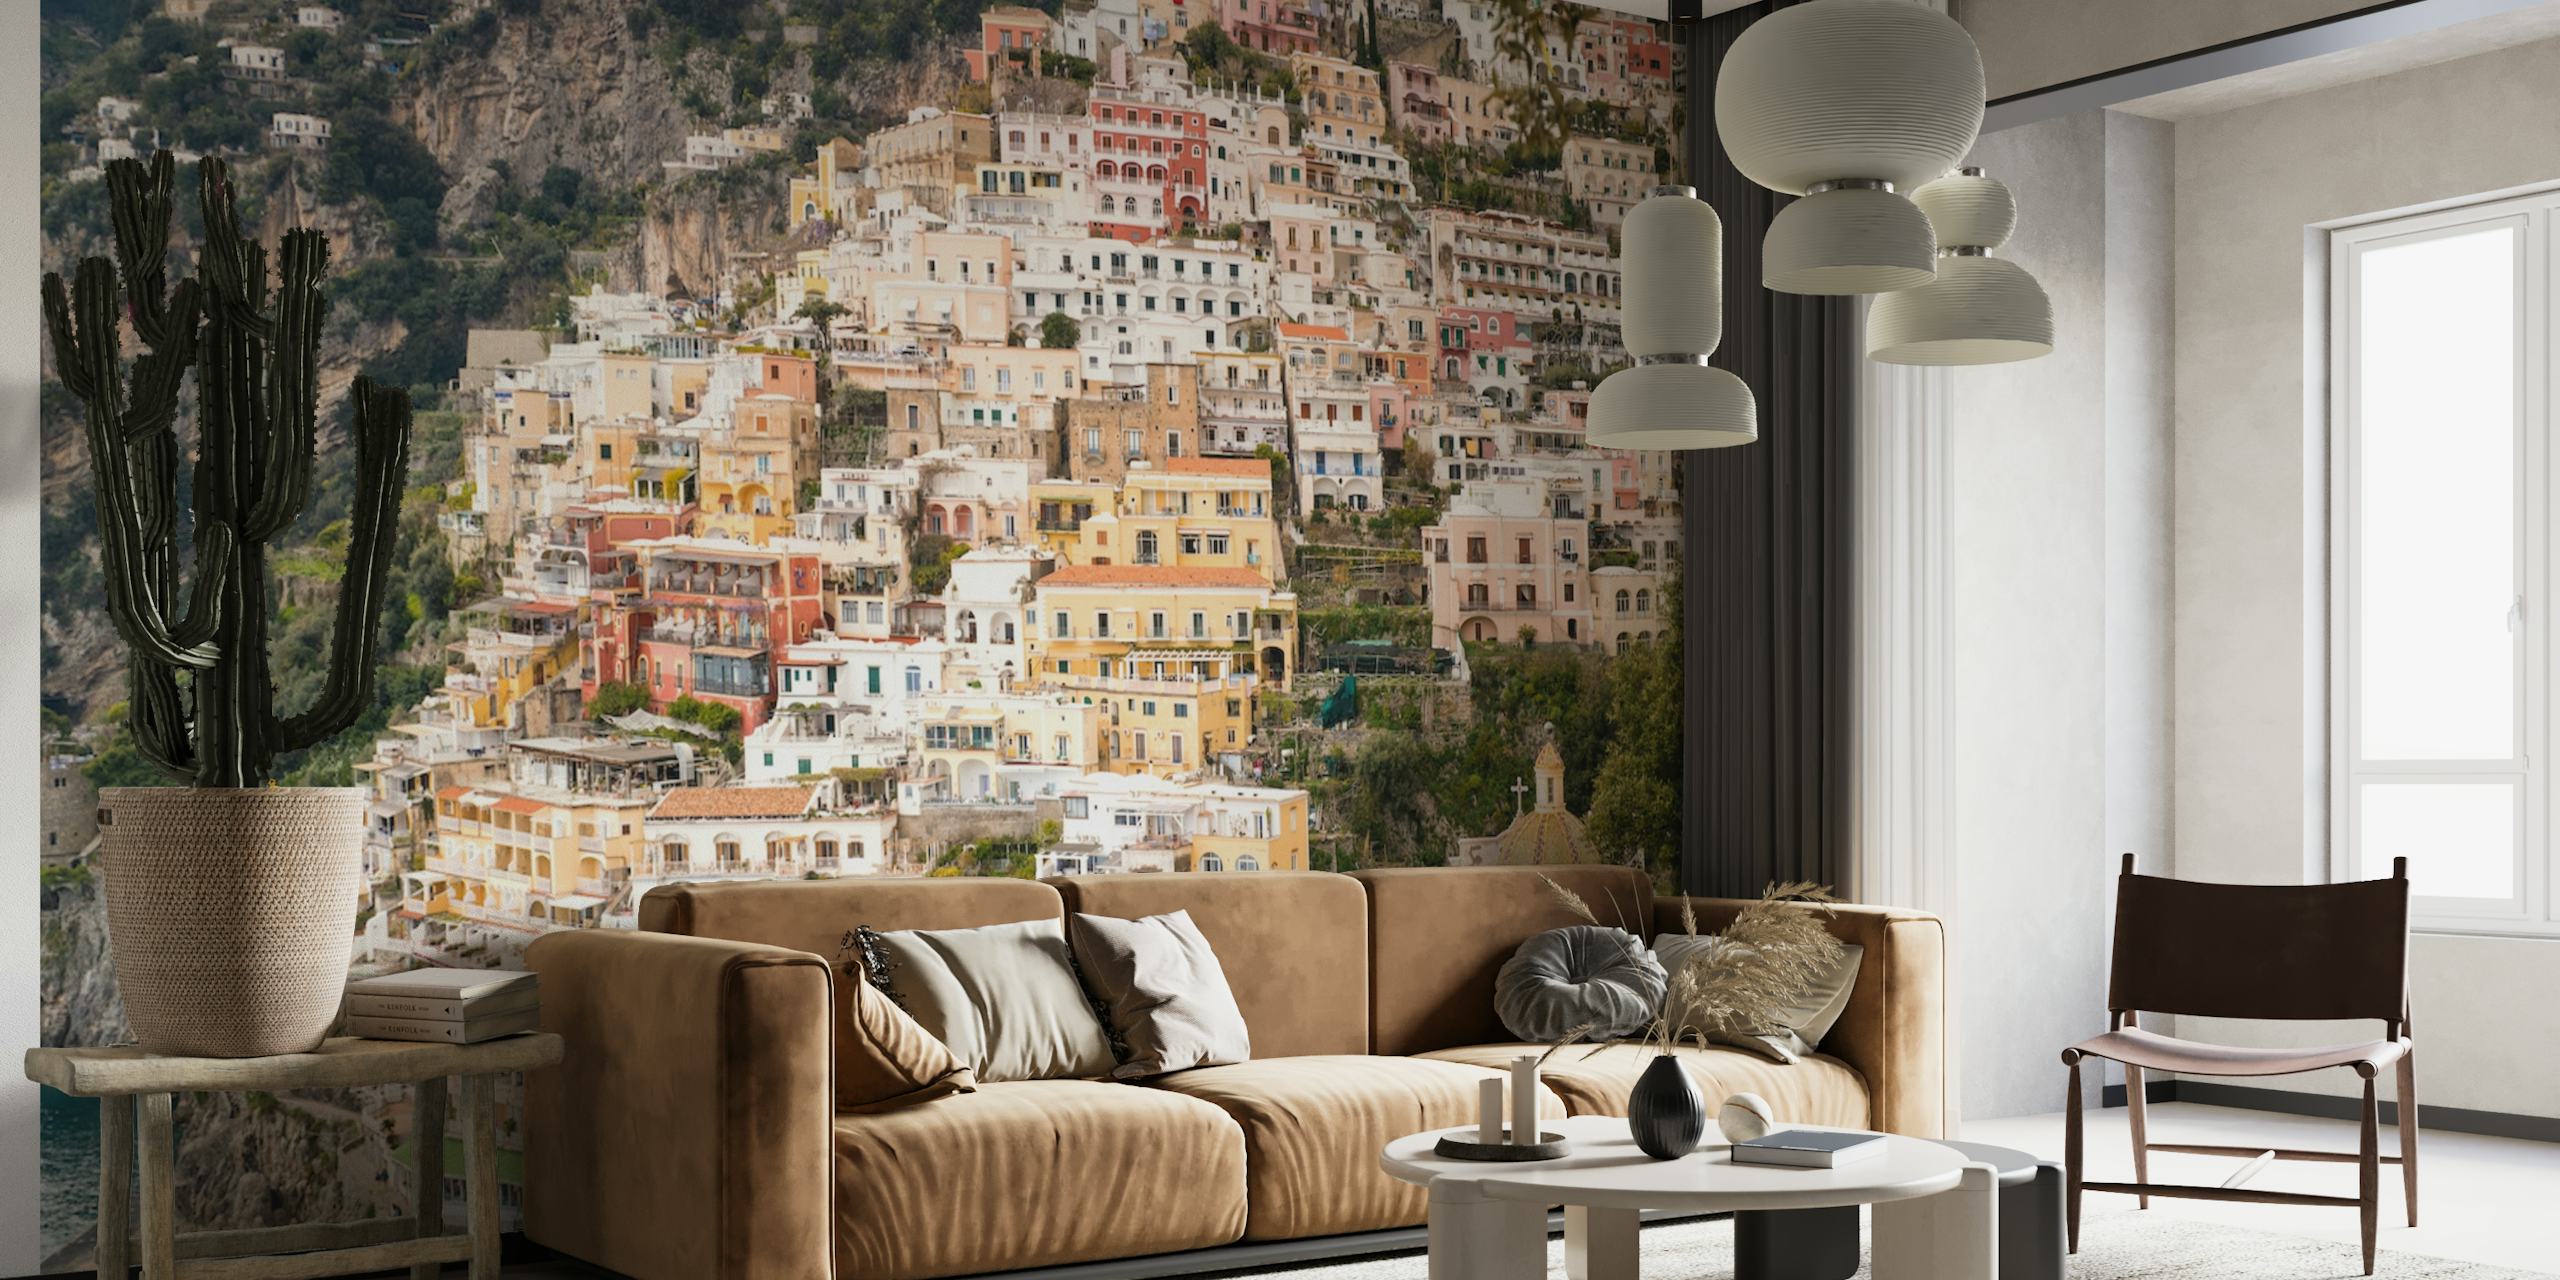 Mural de parede Positano Costa Amalfitana com edifícios coloridos e vibração mediterrânea